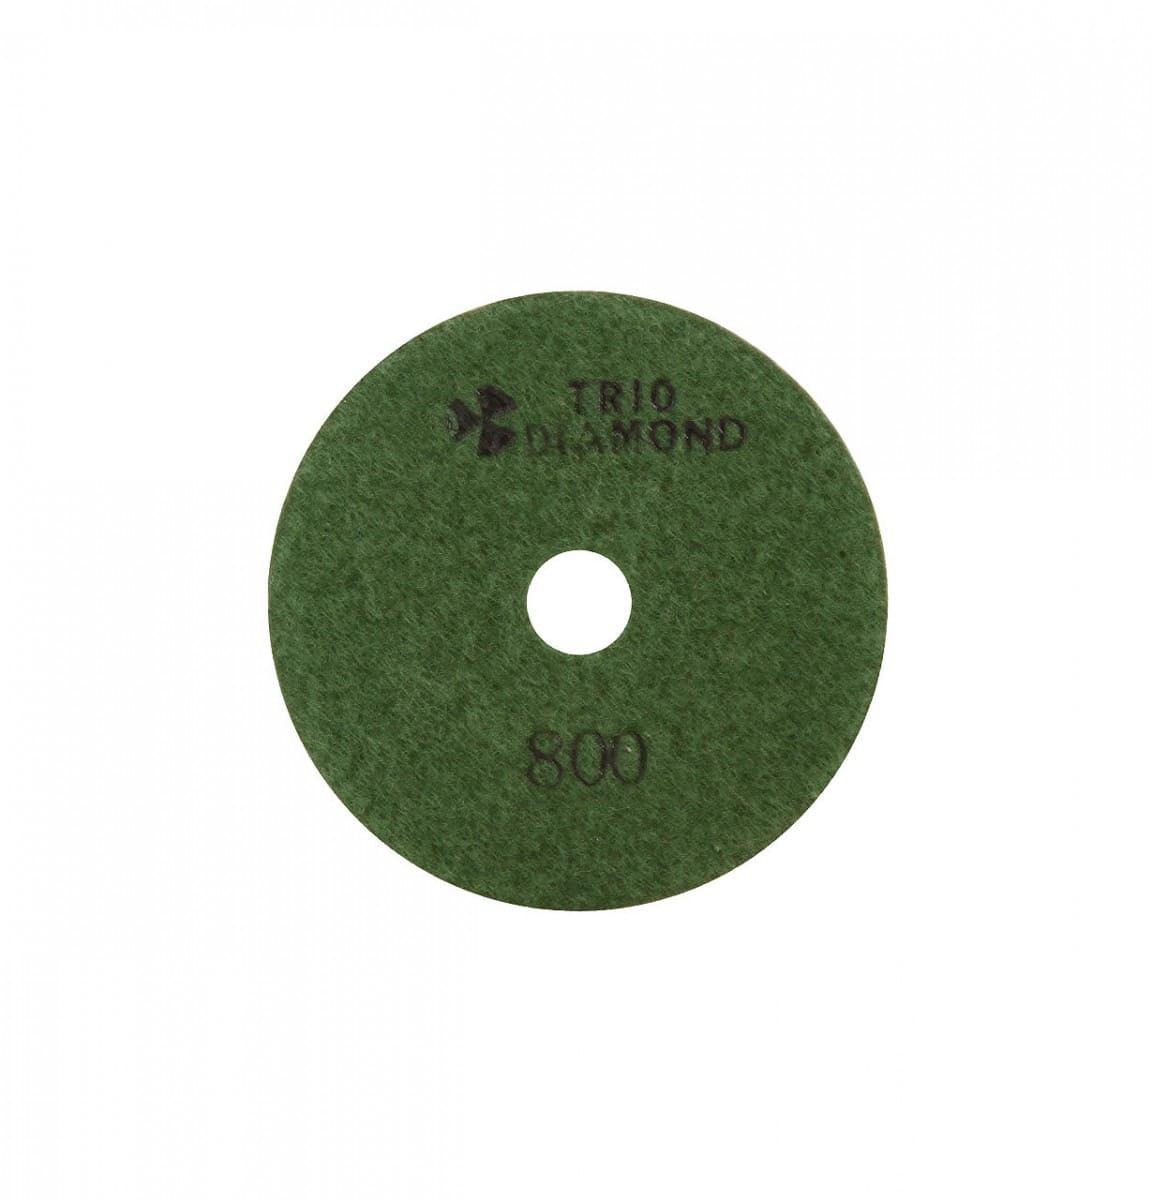 Алмазный гибкий шлифовально - полировальный круг АГШК Черепашка 100мм № 800